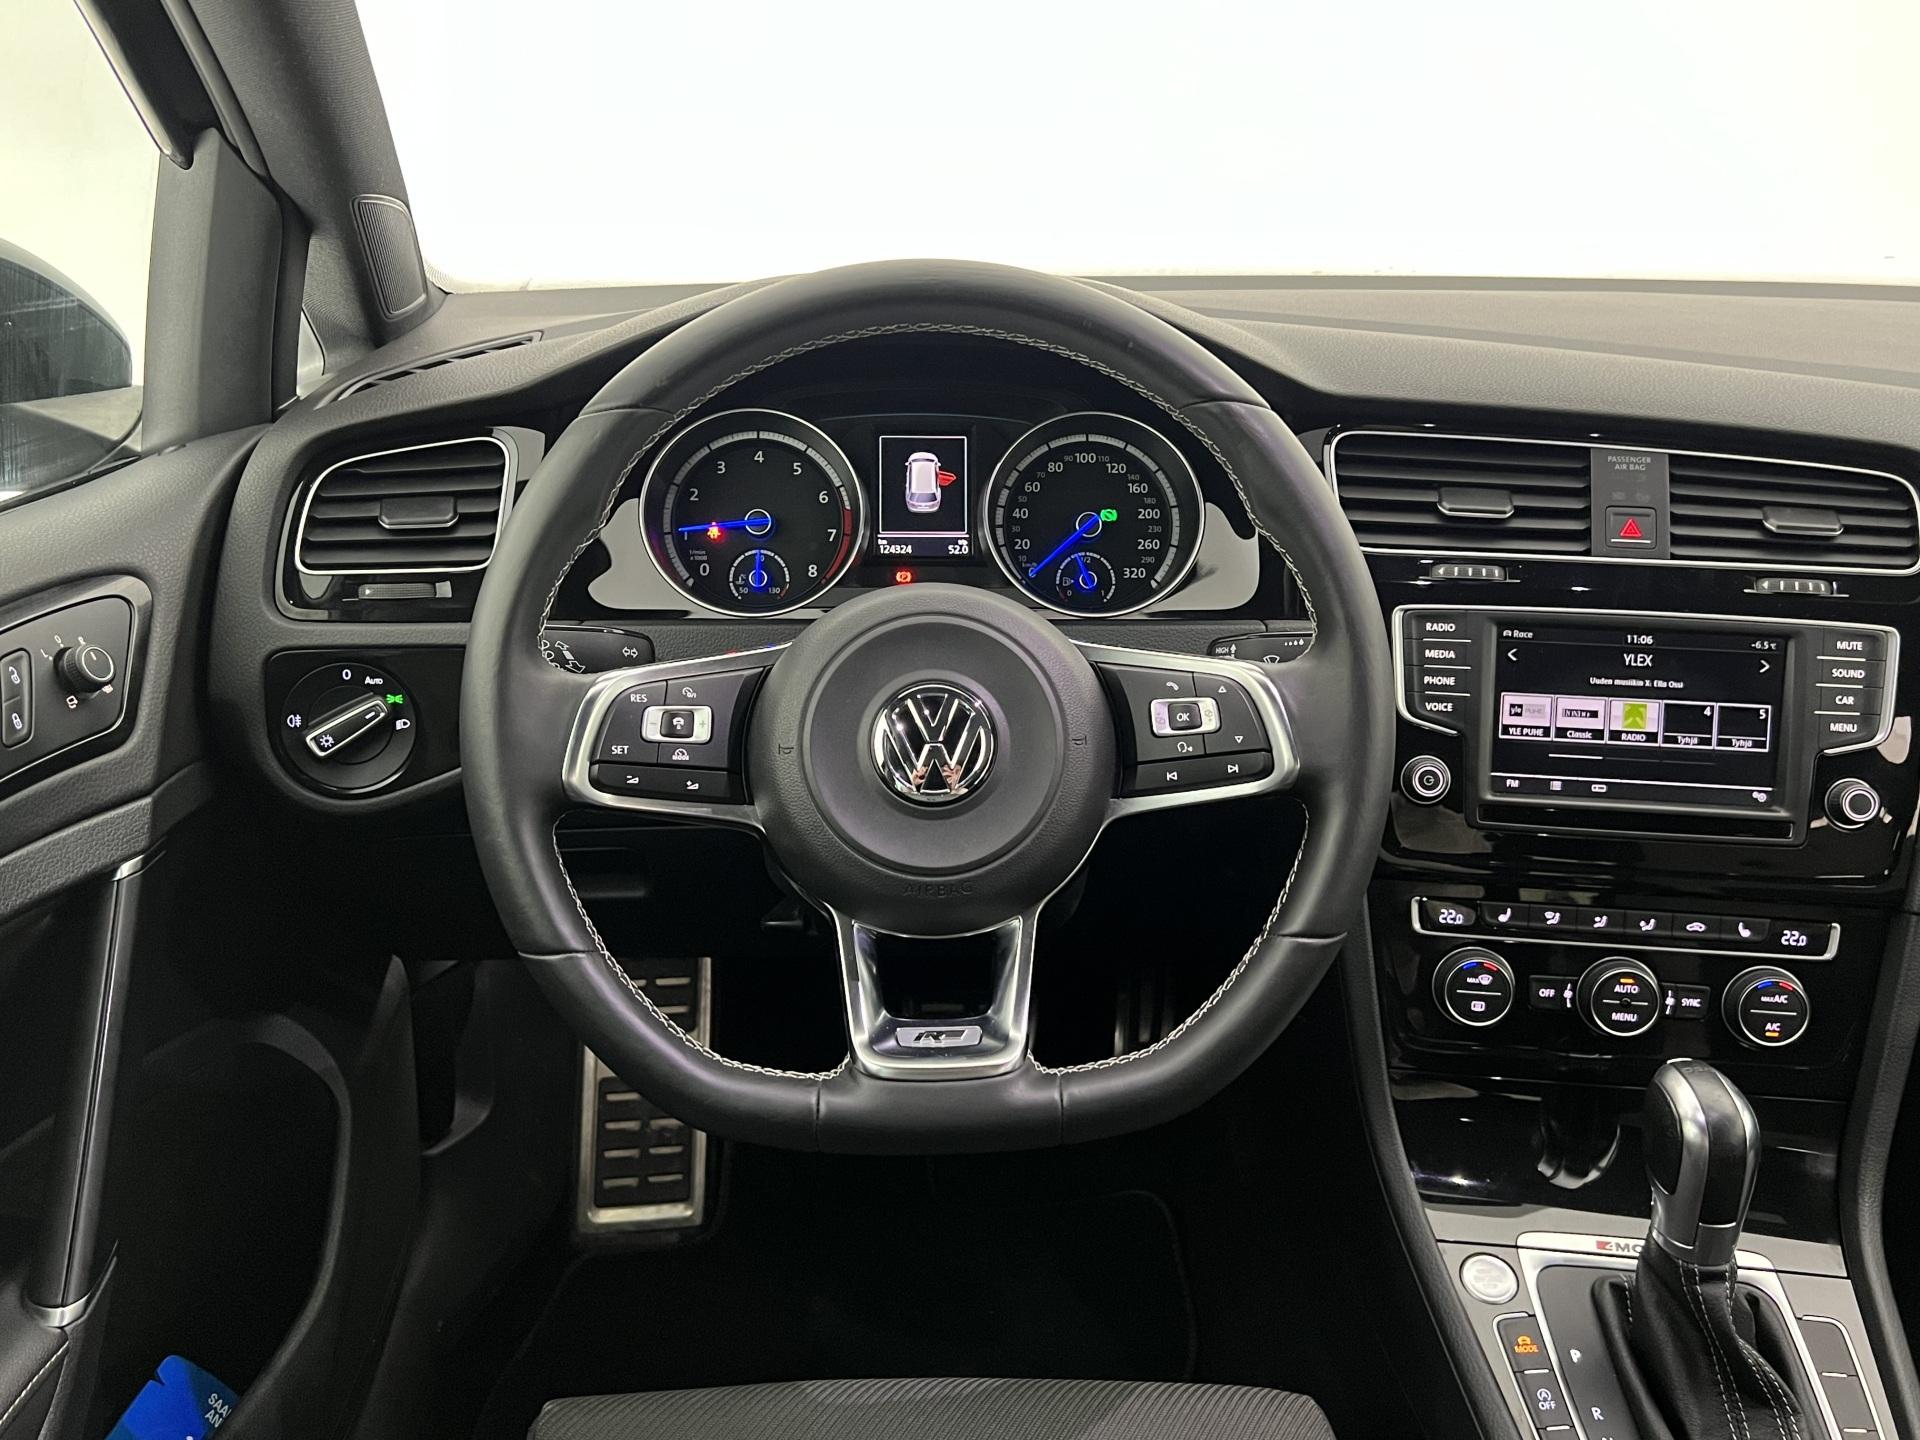 Volkswagen Golf Variant R 2,0 TSI 221 kW (300 hv) 4MOTION DSG ** Adapt.vakkari | LED-valot | P.kamera | Keyless | 2x aluvanteet full